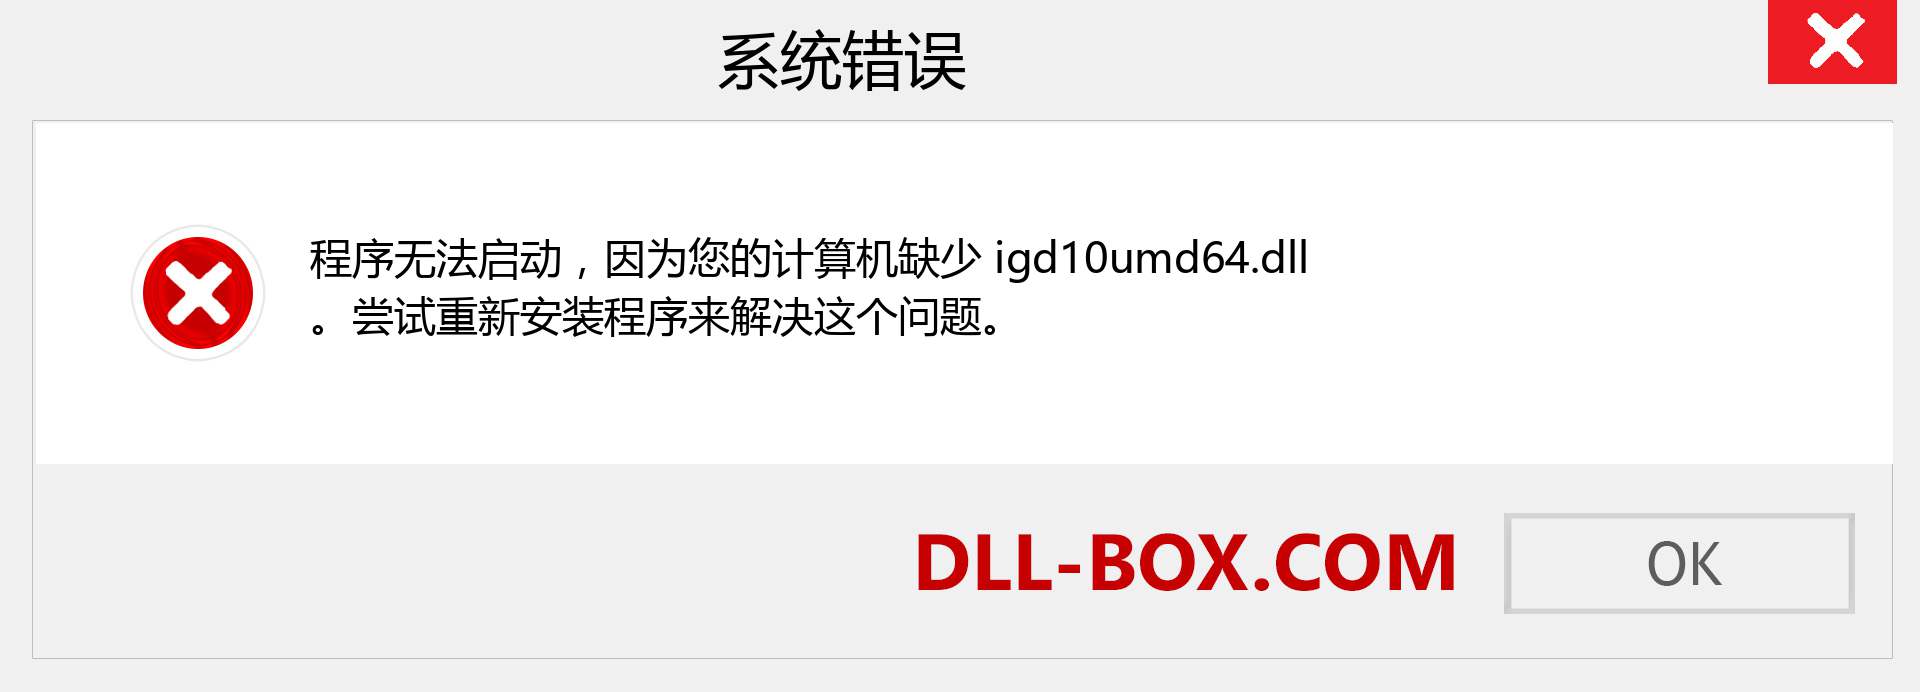 igd10umd64.dll 文件丢失？。 适用于 Windows 7、8、10 的下载 - 修复 Windows、照片、图像上的 igd10umd64 dll 丢失错误